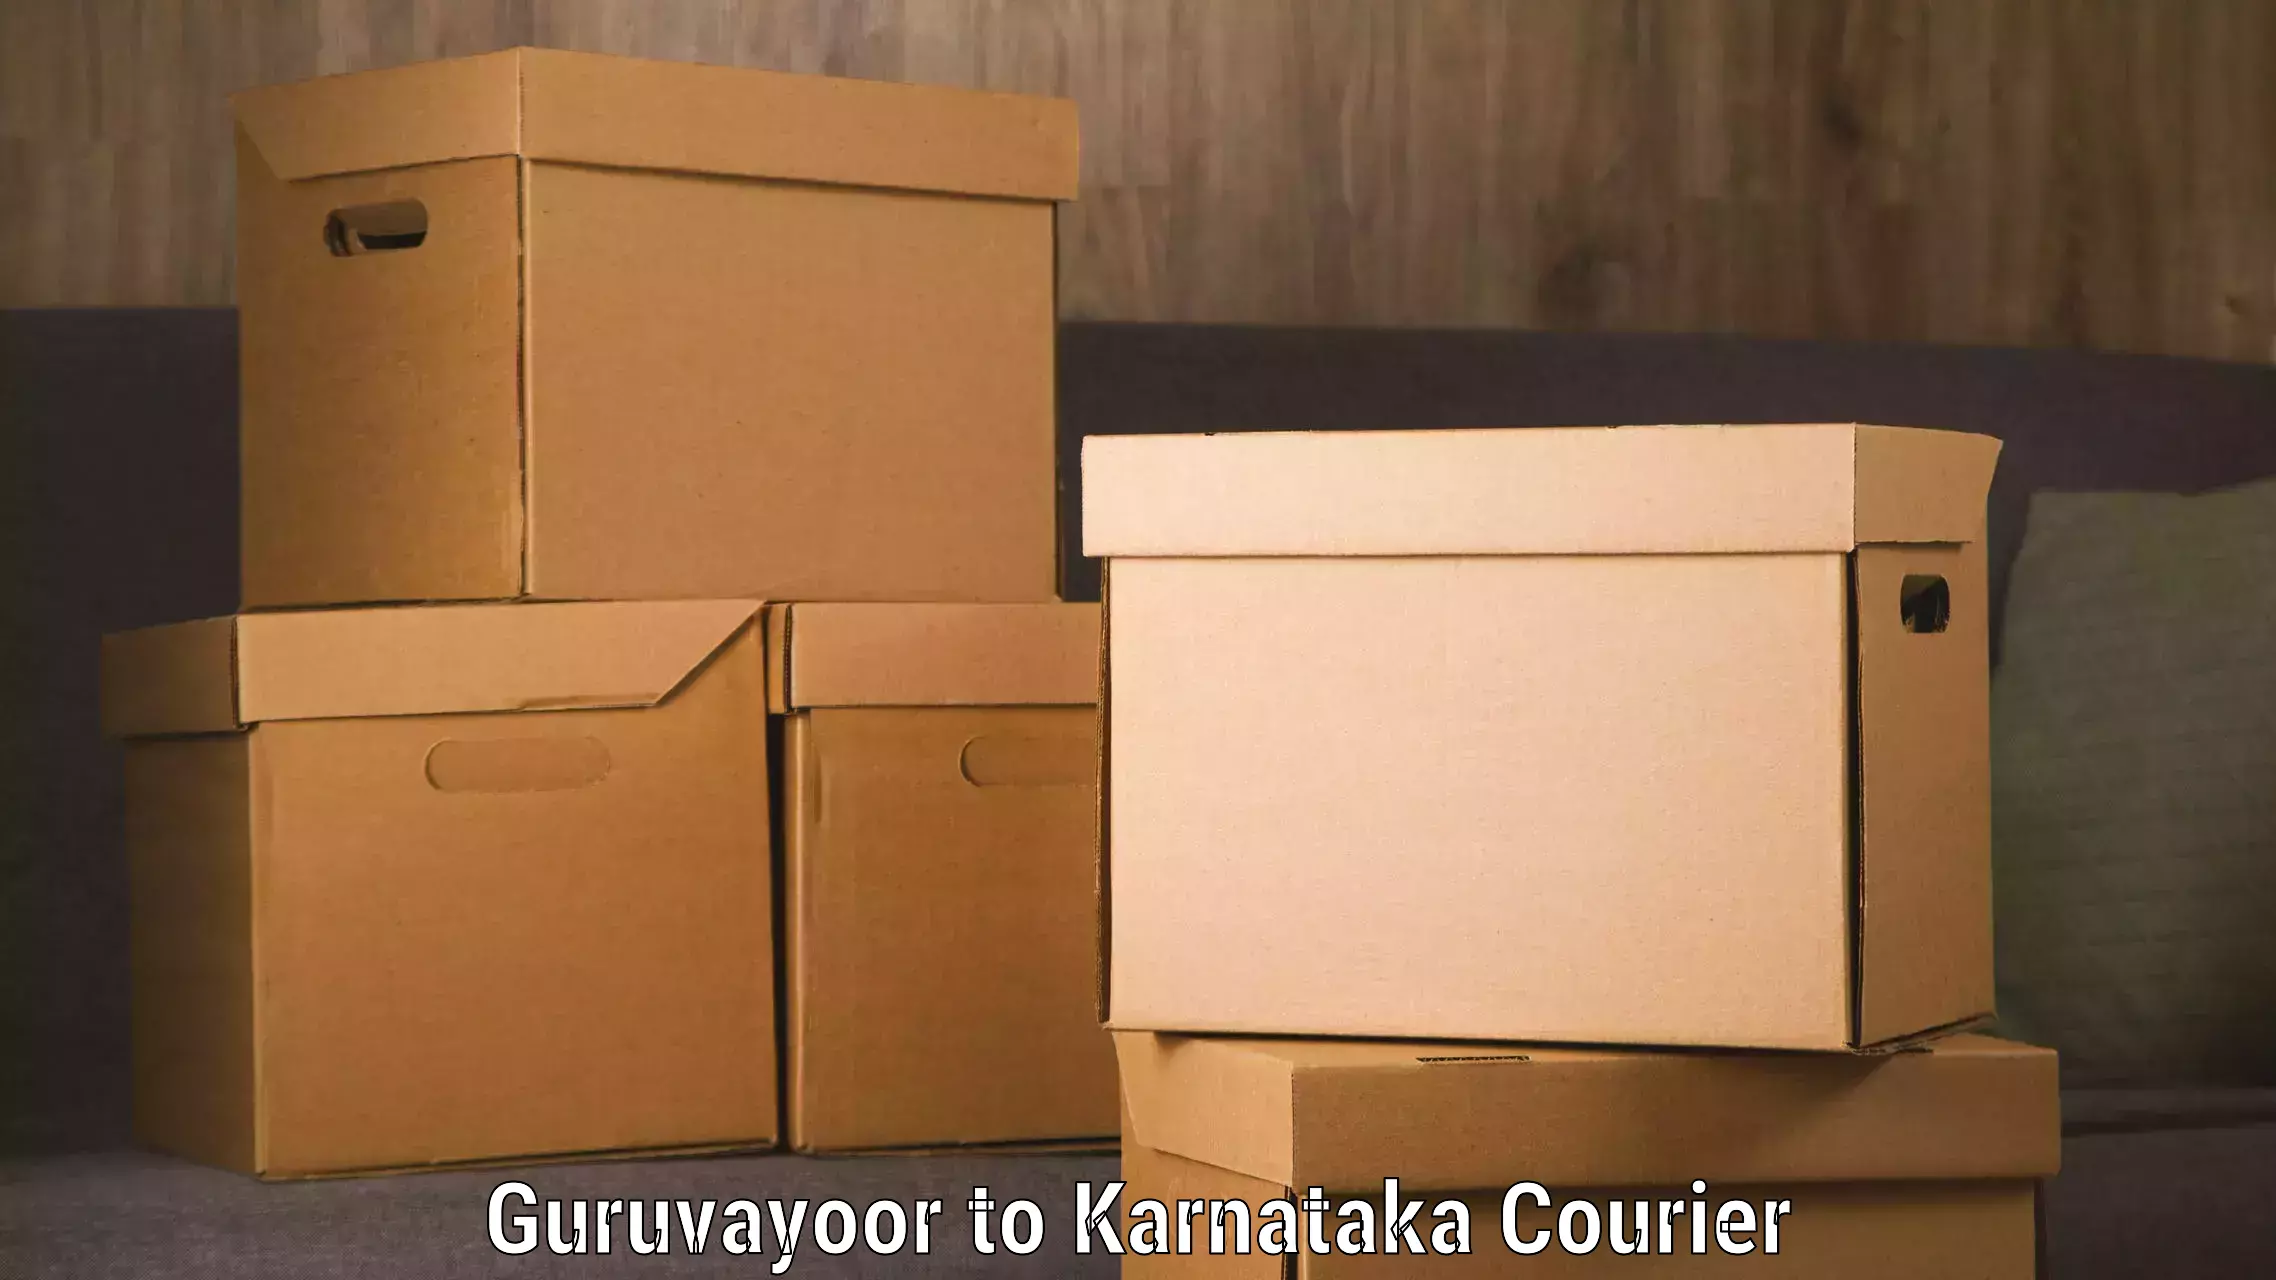 Fast shipping solutions in Guruvayoor to Karnataka